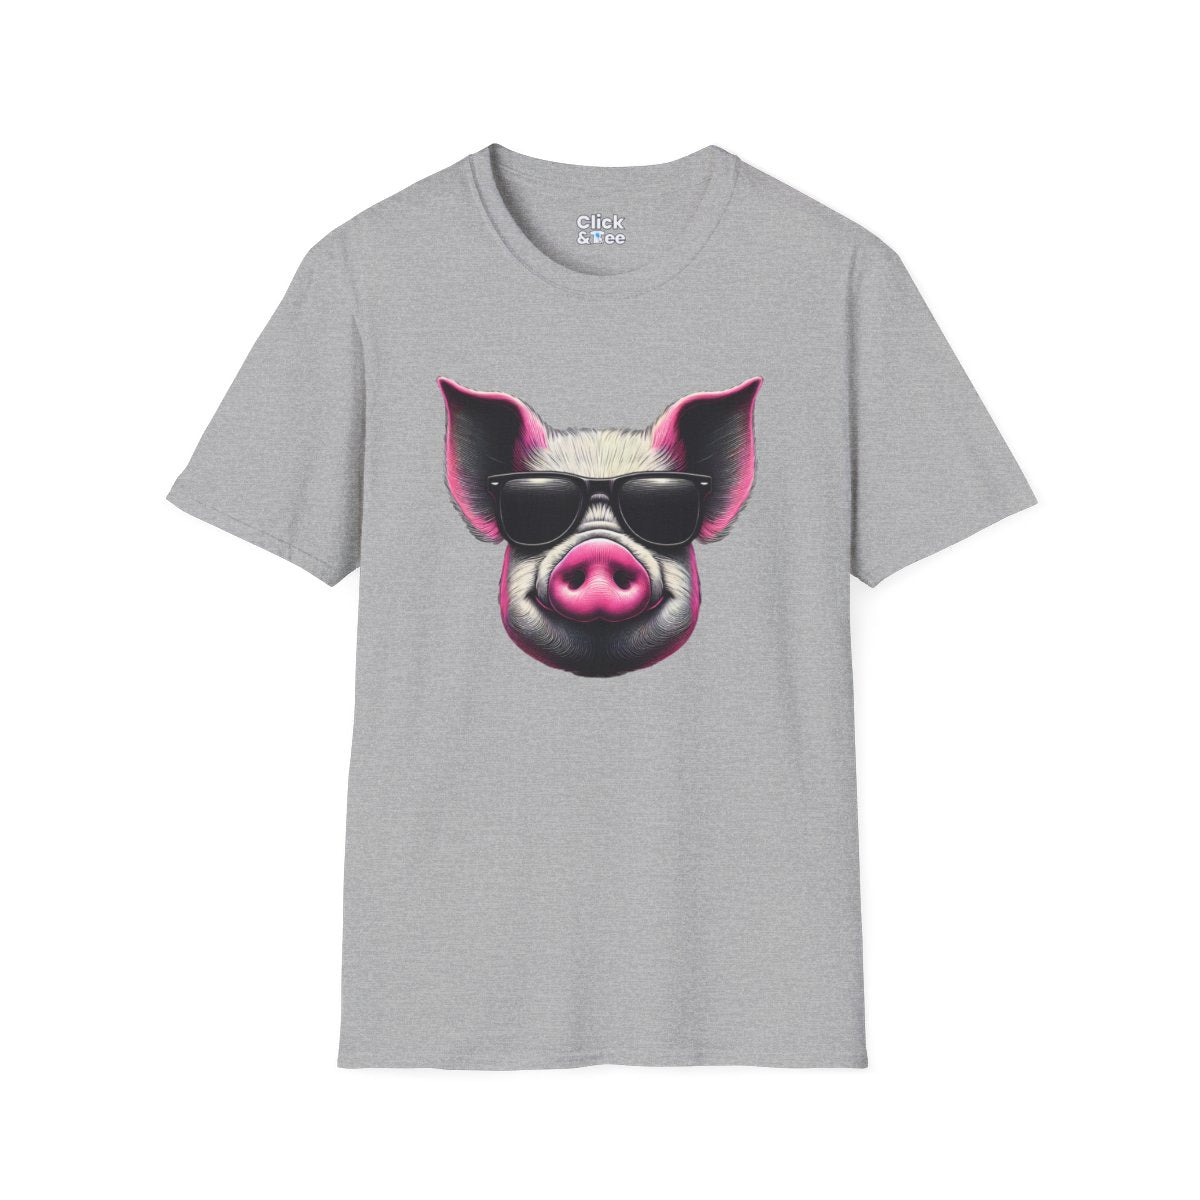 Graphic ArtPink Pig Face Unique T-Shirt Image 8